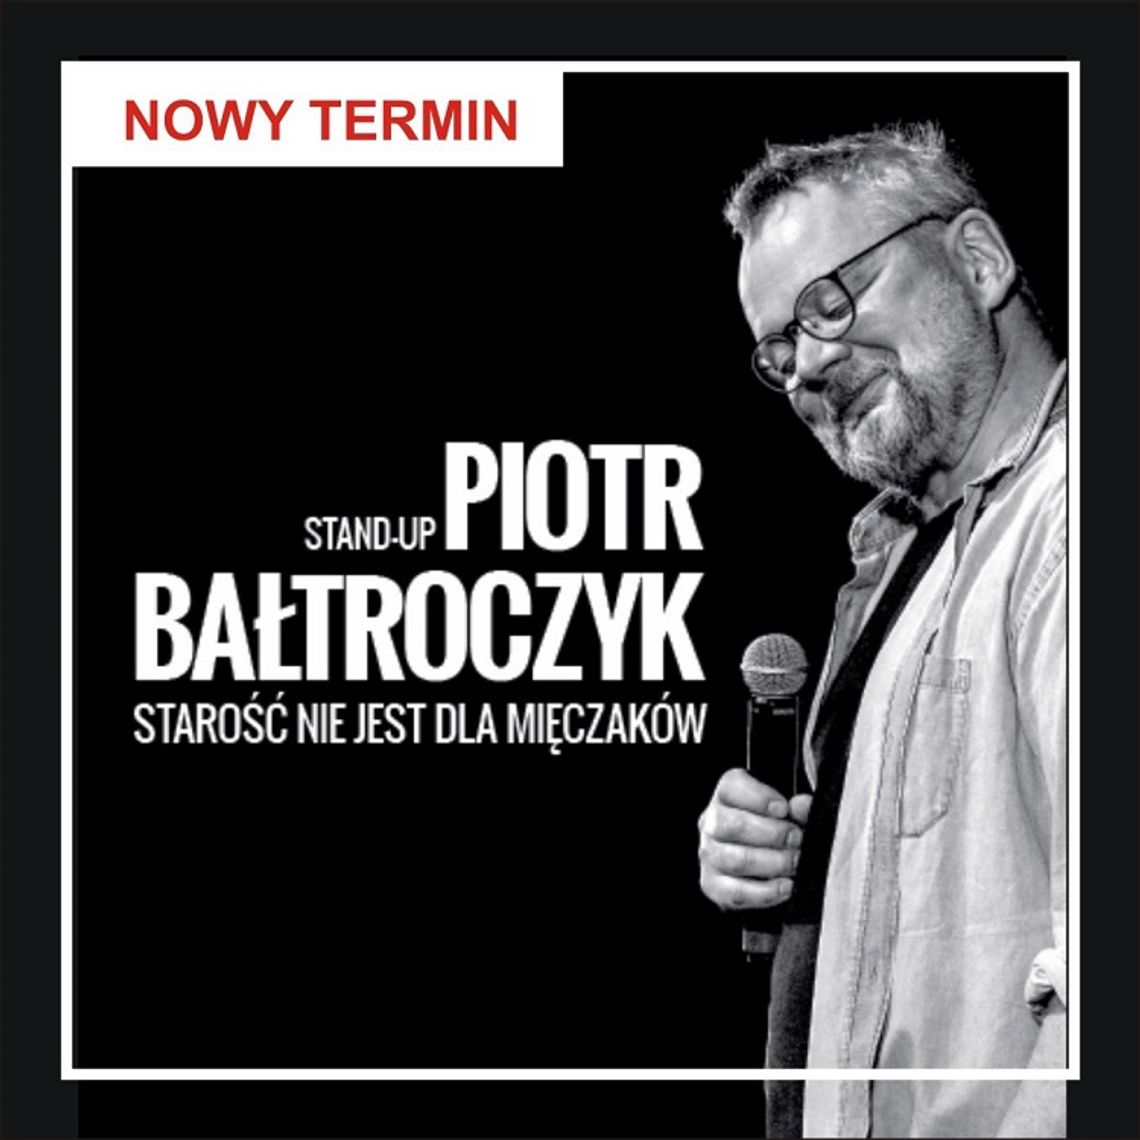 Stand up Piotra Bałtroczyka z nową datą